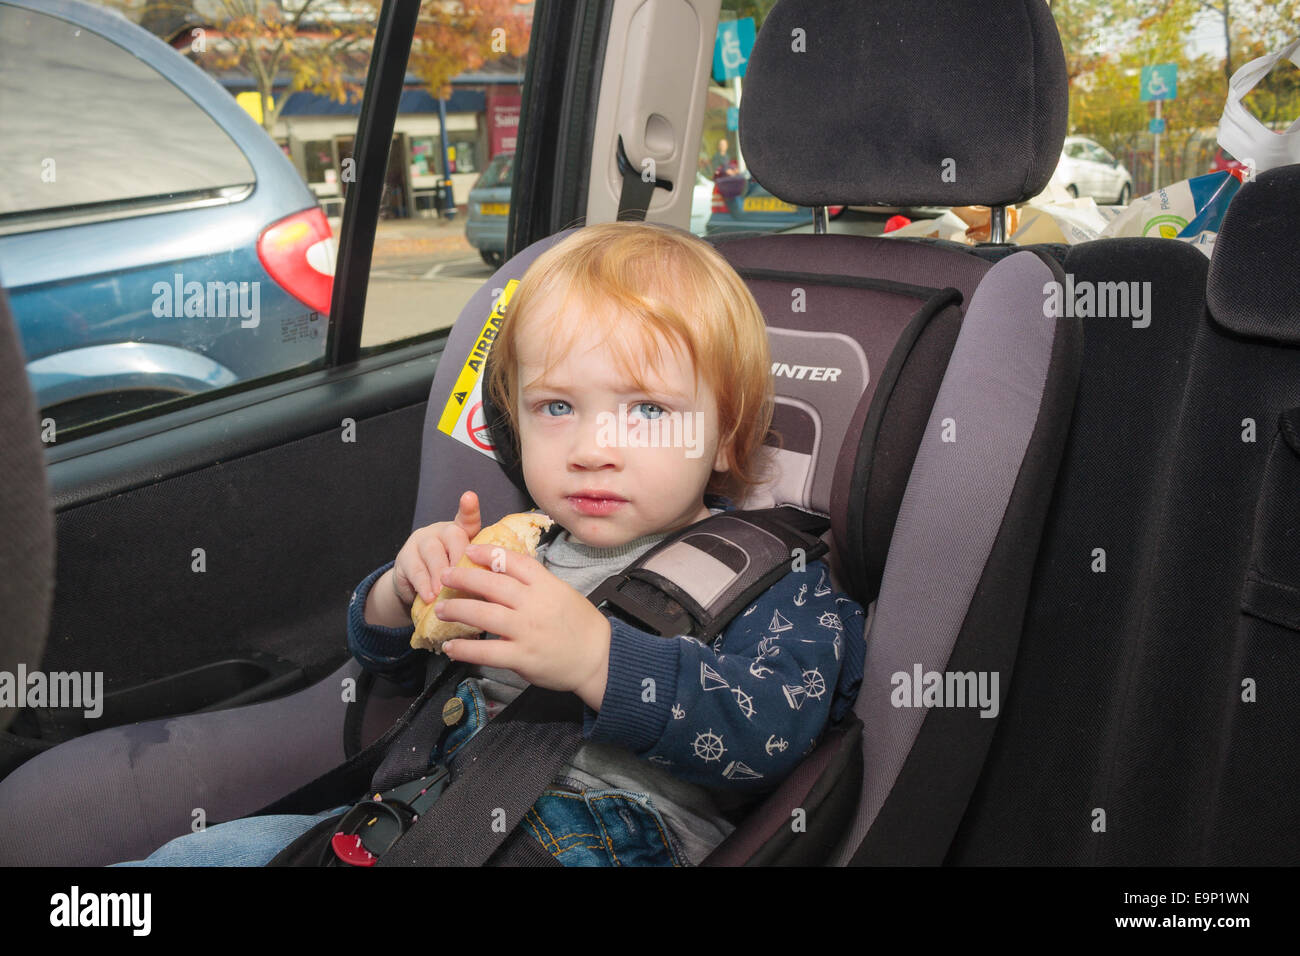 Un garçon âgé d'un an assis dans un siège de voiture dans une voiture en stationnement au parking d'un supermarché Banque D'Images